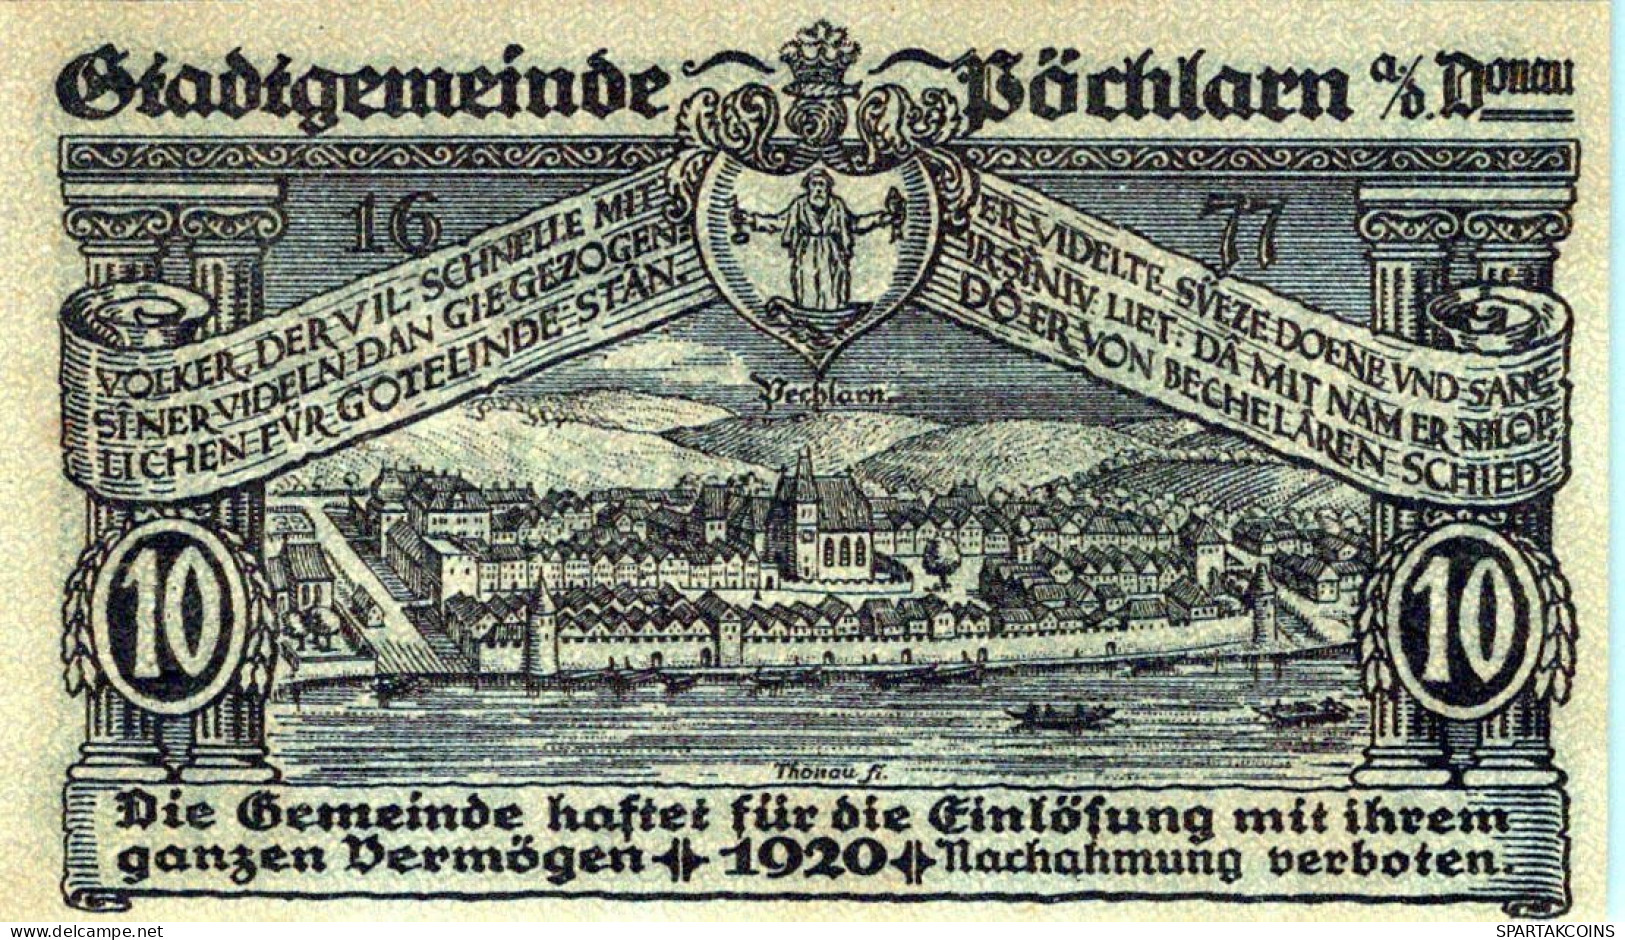 10 HELLER 1920 Stadt PoCHLARN Niedrigeren Österreich Notgeld Banknote #PE323 - [11] Emissioni Locali